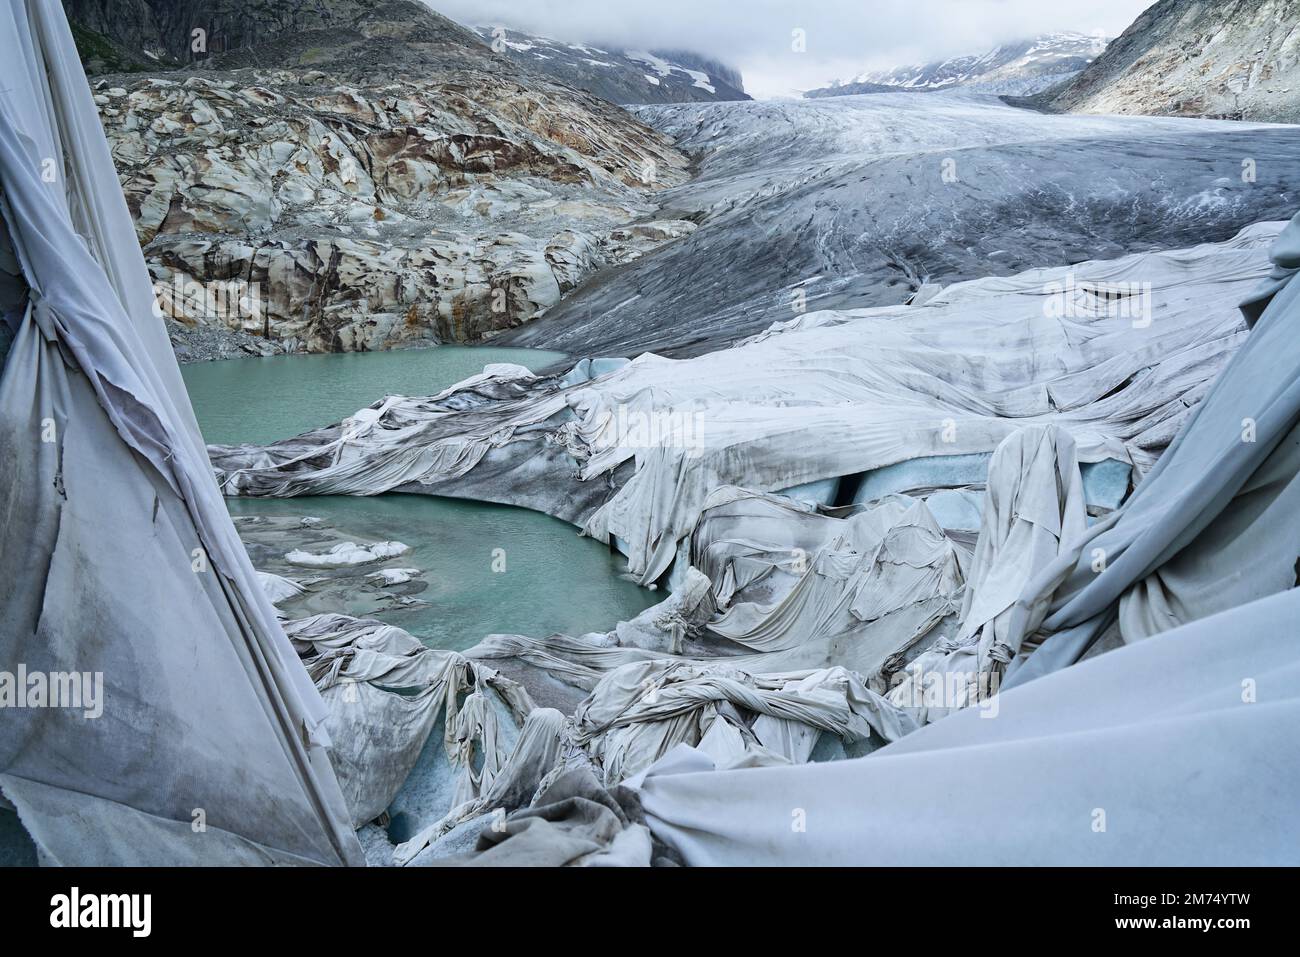 Das Schmelzen des Rhongletschers ist das sichtbarste Zeichen des Klimawandels. Aufgrund der hohen Temperaturen können weiße Laken den Gletscher nicht mehr schützen Stockfoto